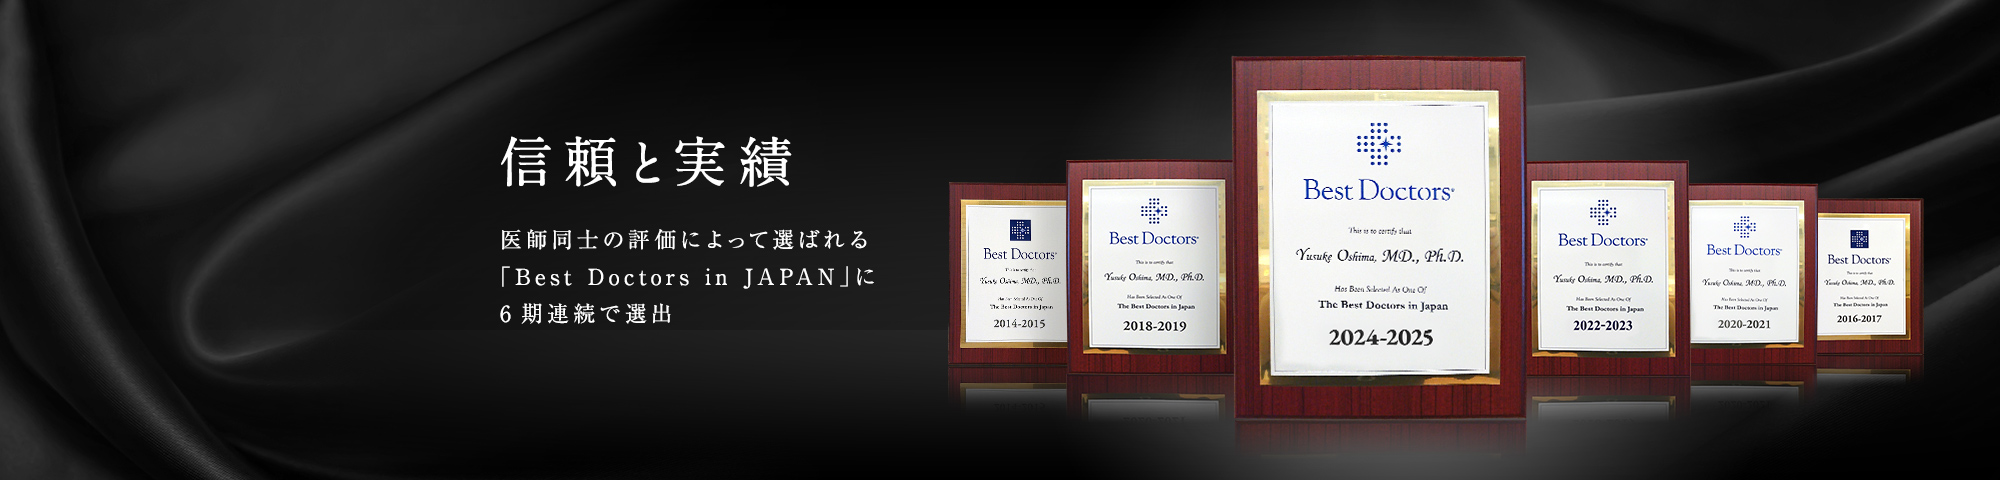 信頼と実績　医師同士の評価によって選ばれる 「Best Doctors in JAPAN」に6期連続で選出